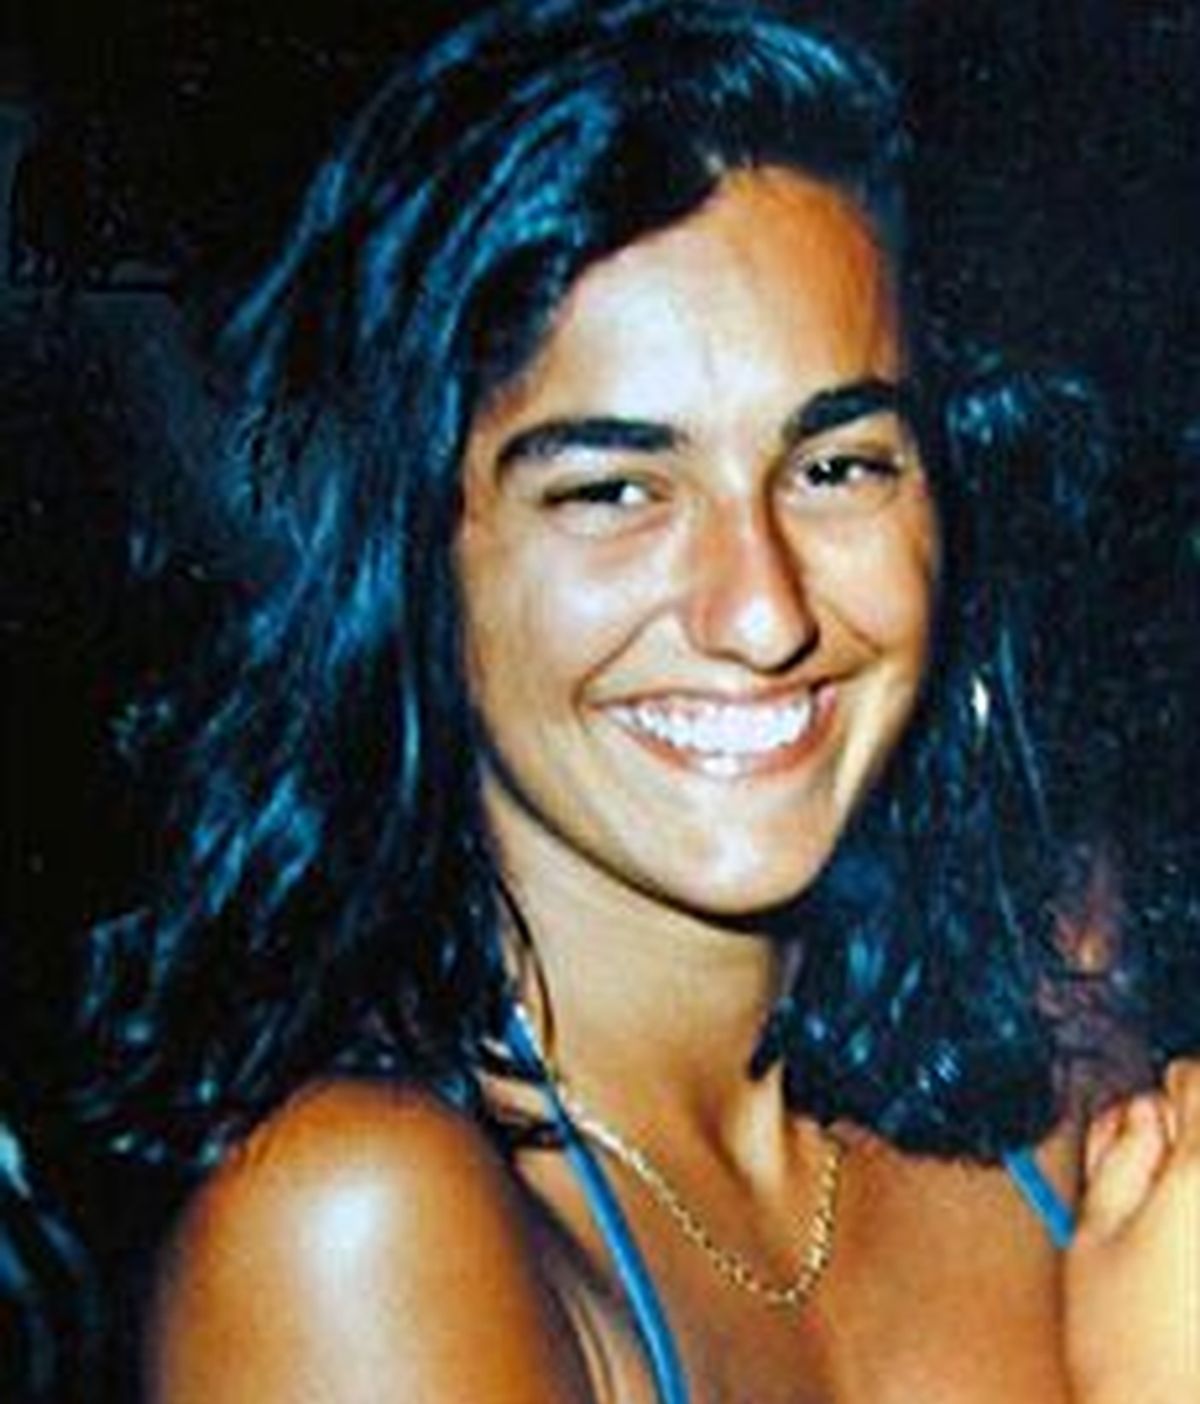 Eluana Englaro, de 38 años permanece en coma vegetativo desde 1992. Su caso ha levantado la polémica sobre la eutanasia en Italia. Foto archivo